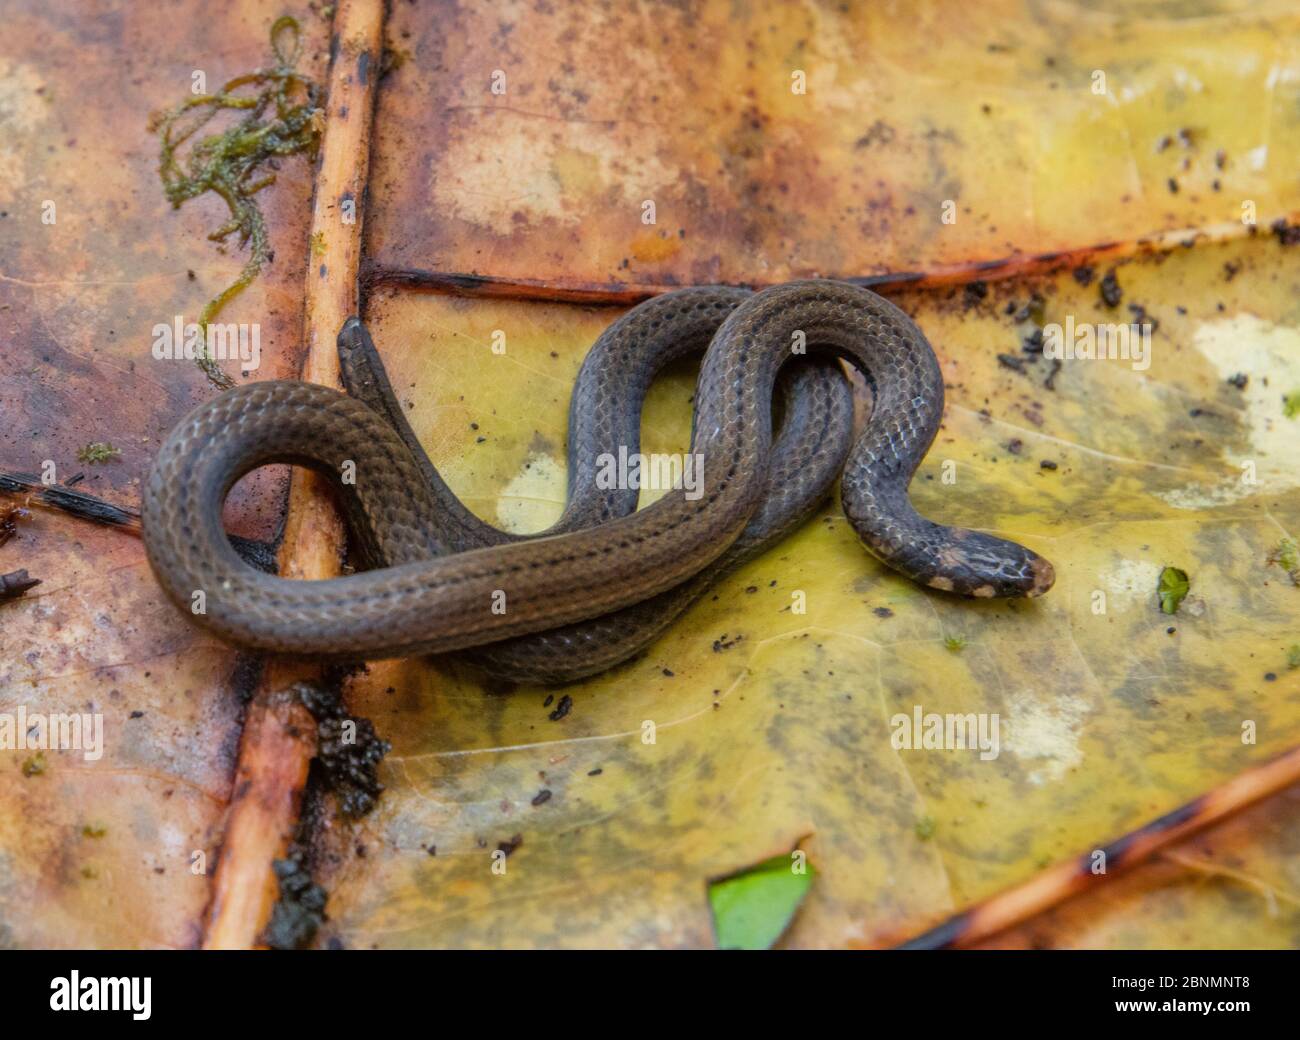 La serpiente de cabeza negra (Tantilla melanocephala) Provincia el Oro, Reserva Biológica Buenaventura, Ecuador Foto de stock